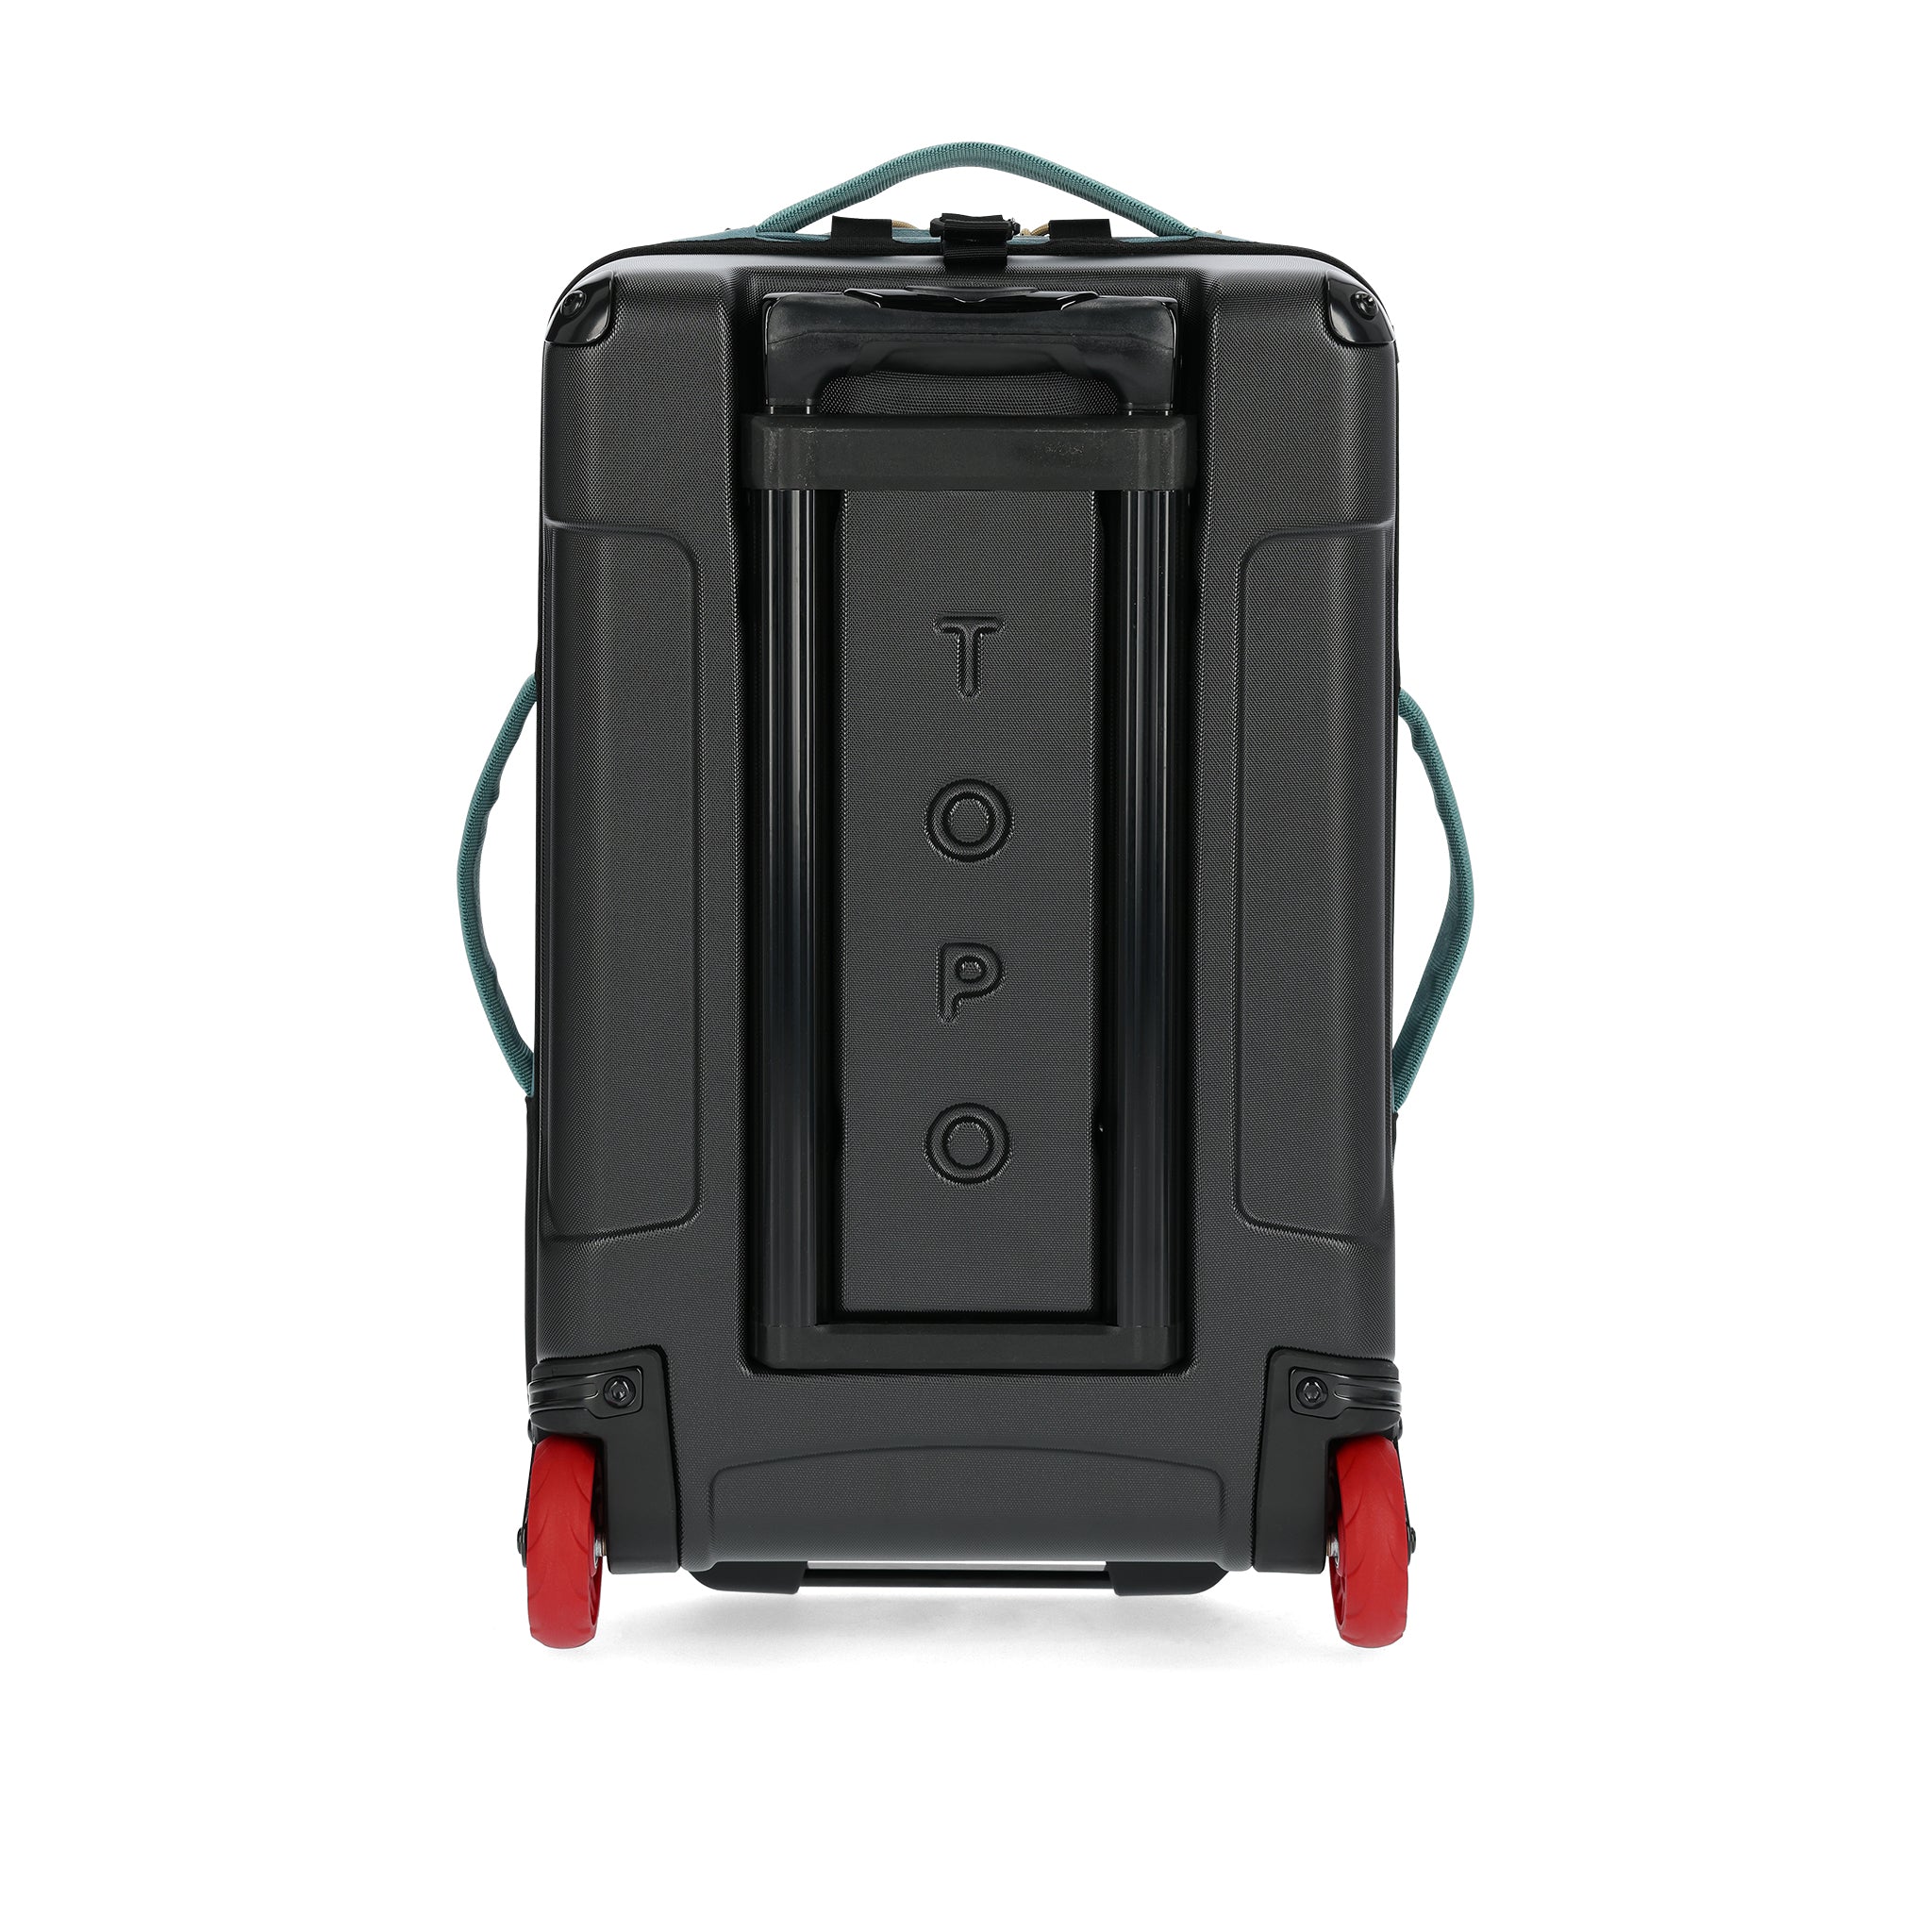 Global Travel Roller Bag 44L | Topo Designs